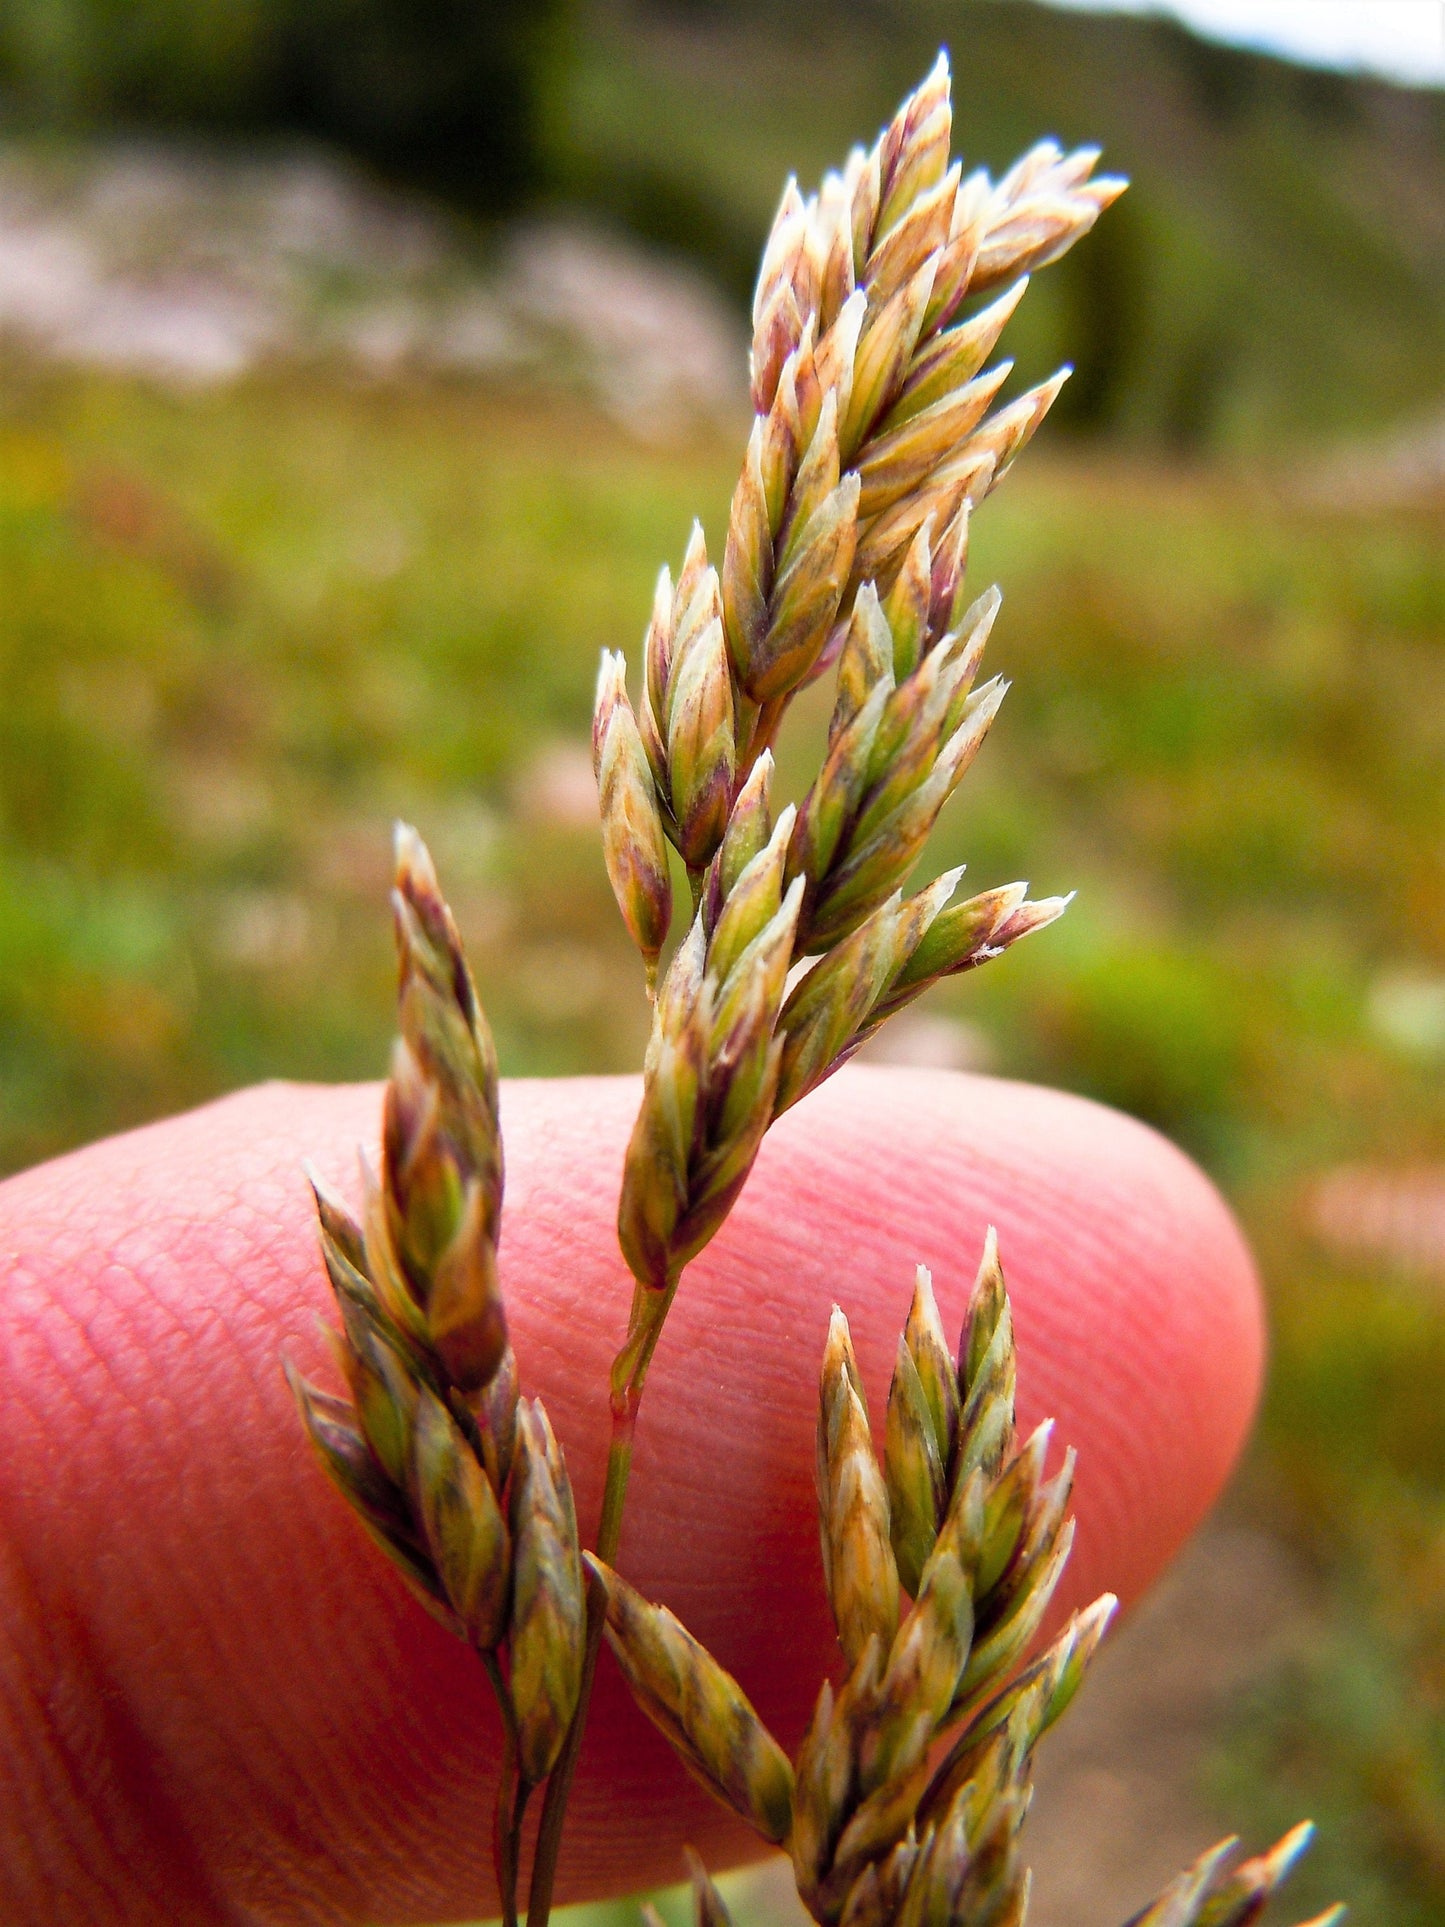 1 Pound BULK MUTTONGRASS Poa Fendleriana Eragrostis Mutton Grass Bluegrass Native Seeds - 1 Lb - Approx 890,000 Seeds